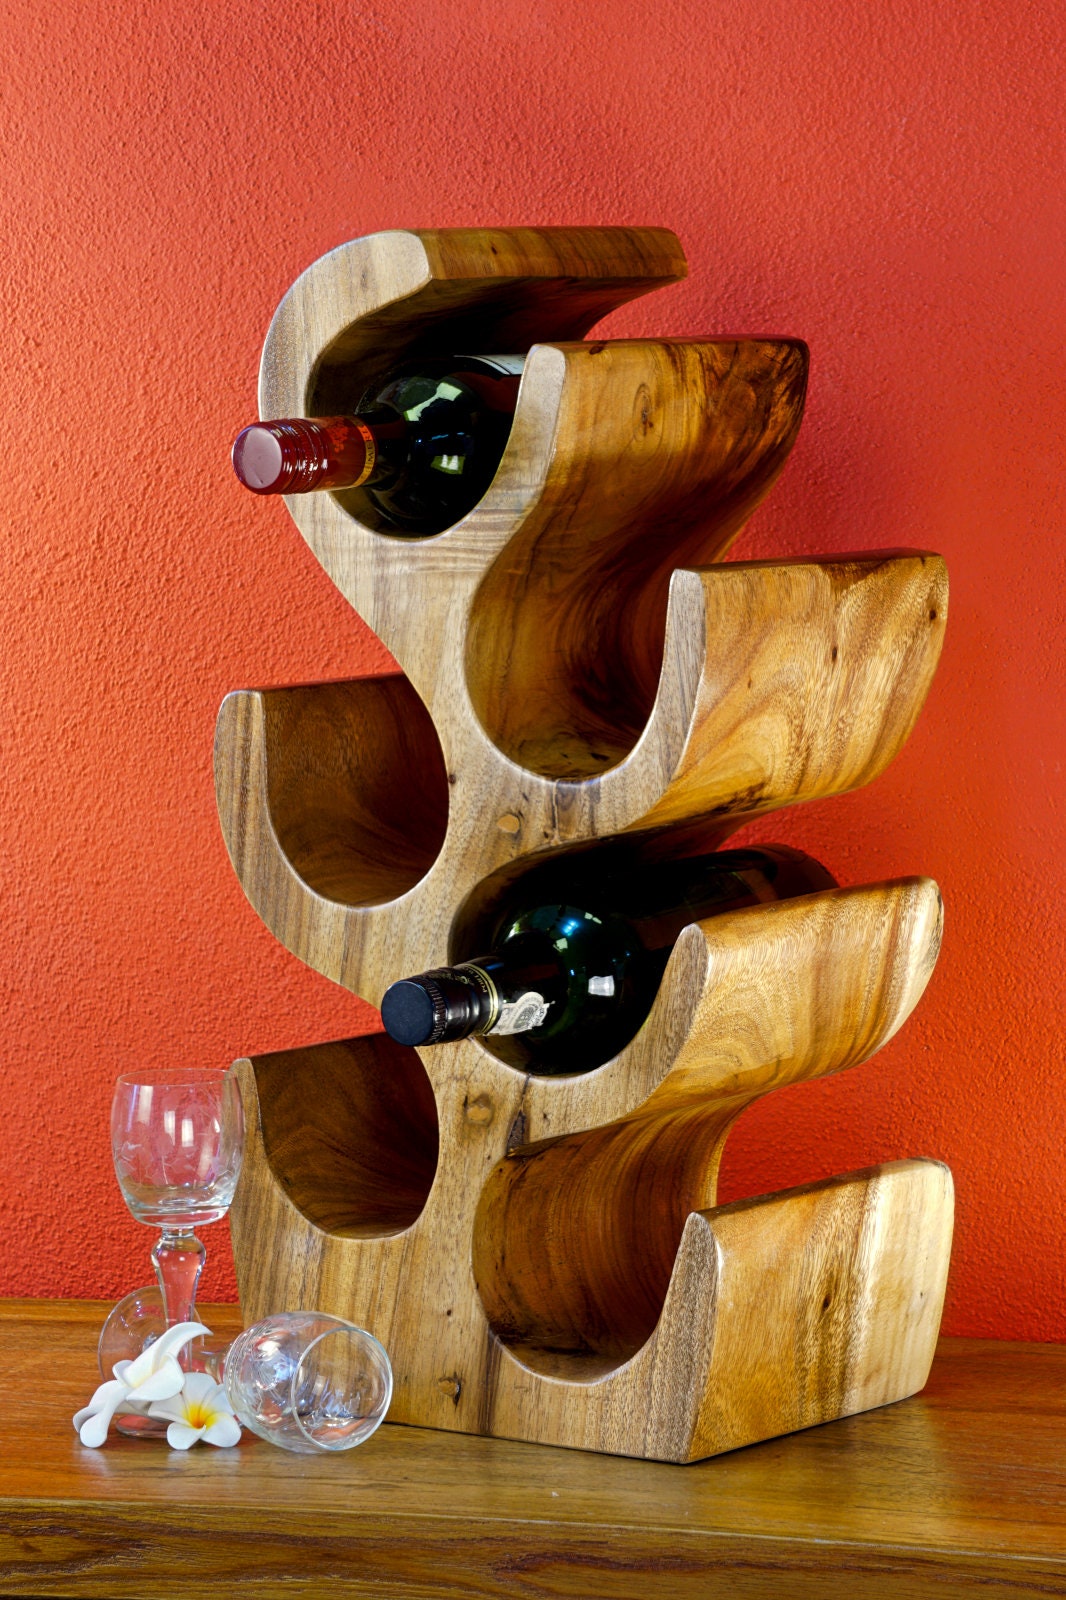 Creative Wood Wine Rack - Monkeypod Wood - ApolloBox